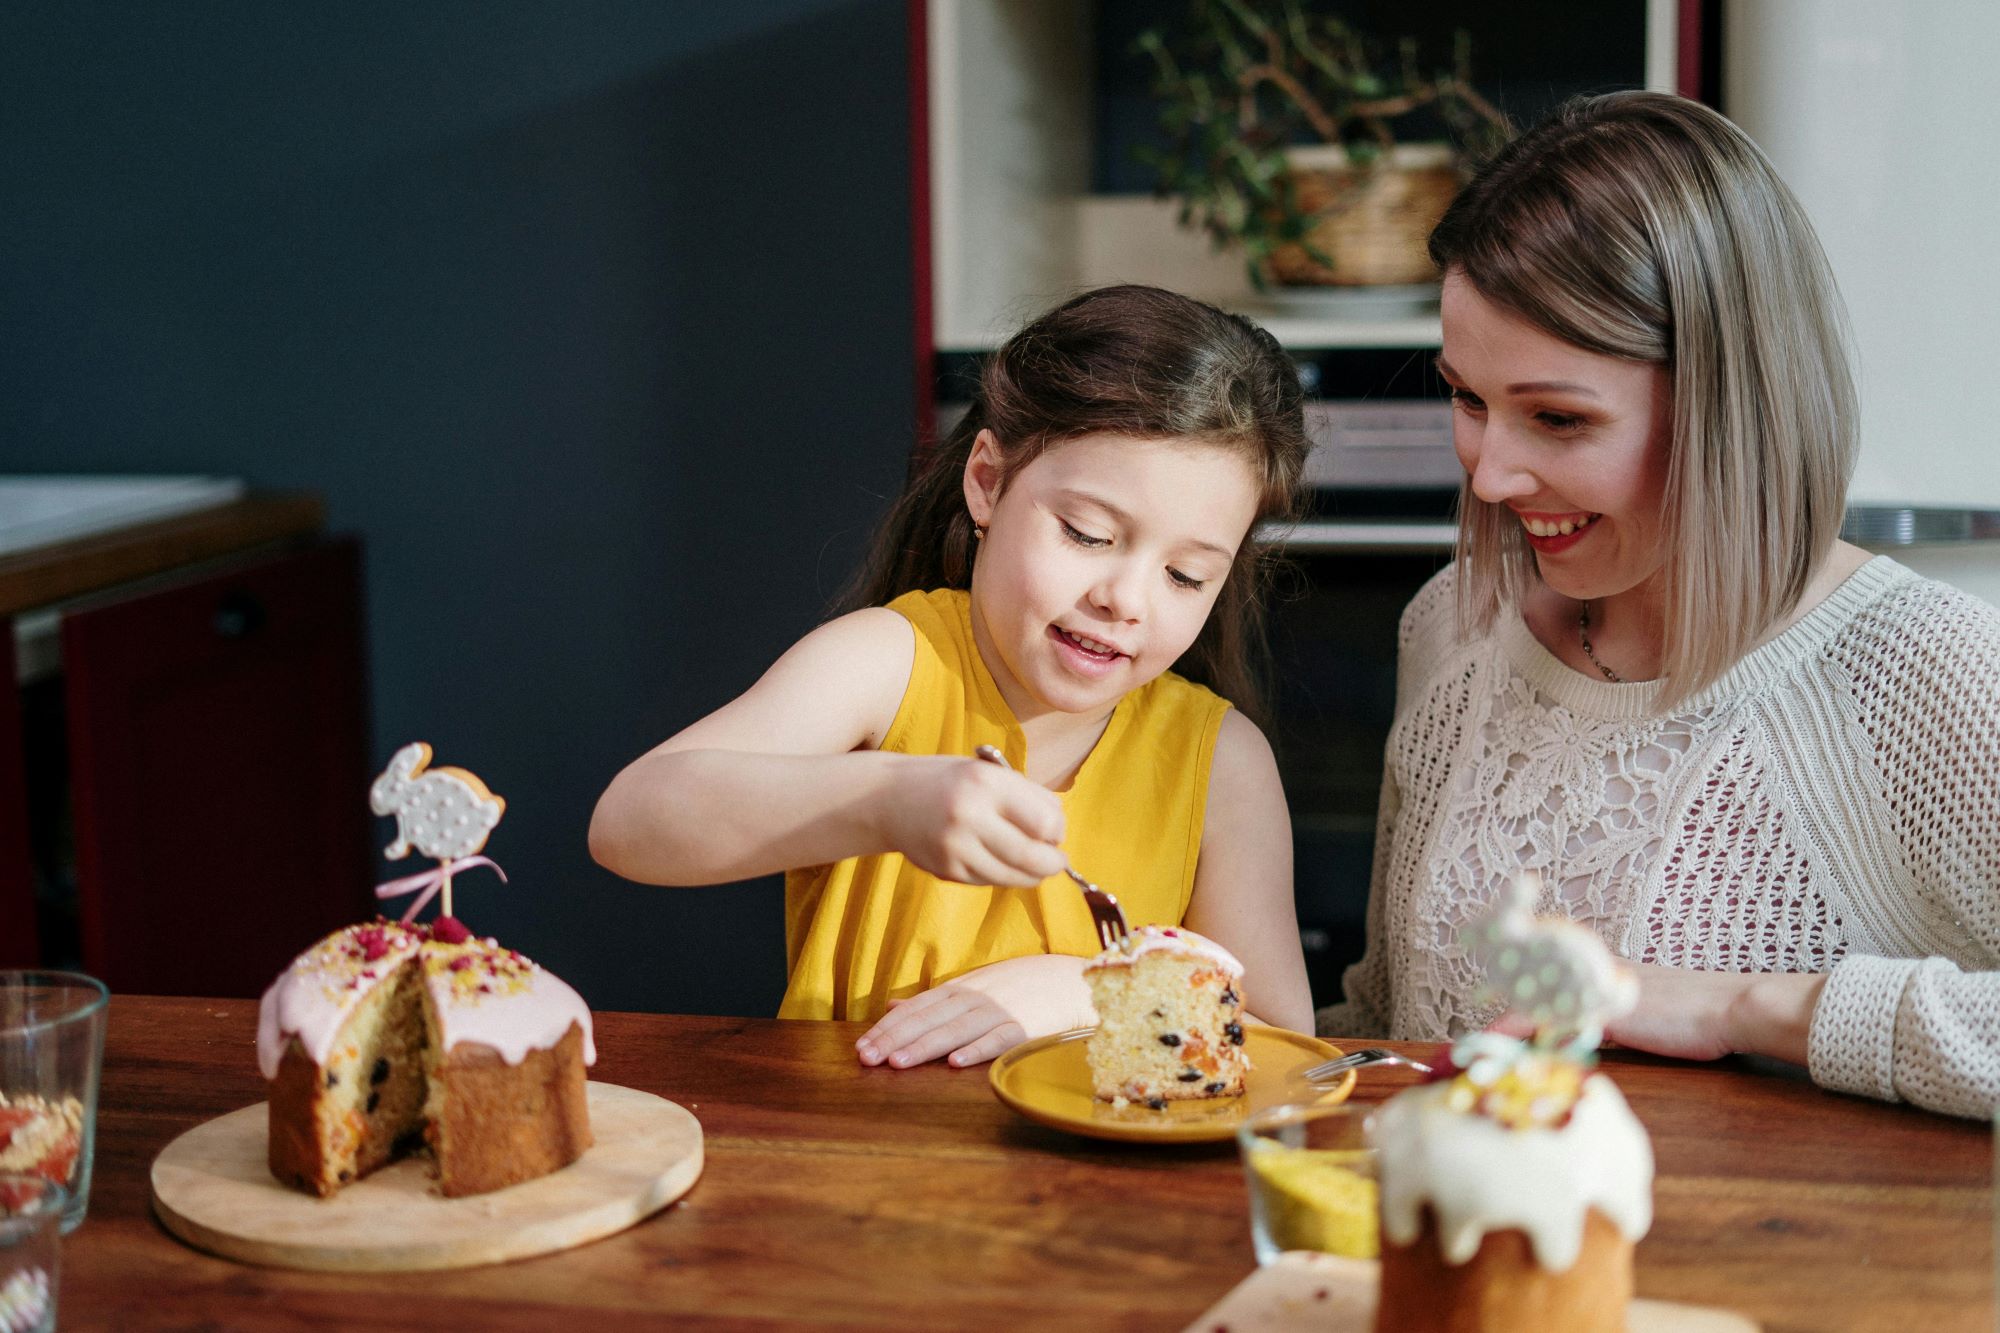 Tradycje kulinarne na Wielkanoc w Wielkiej Brytanii to także słodkości. Na zdjęciu dziewczynka z mamą dekorują ciasto.